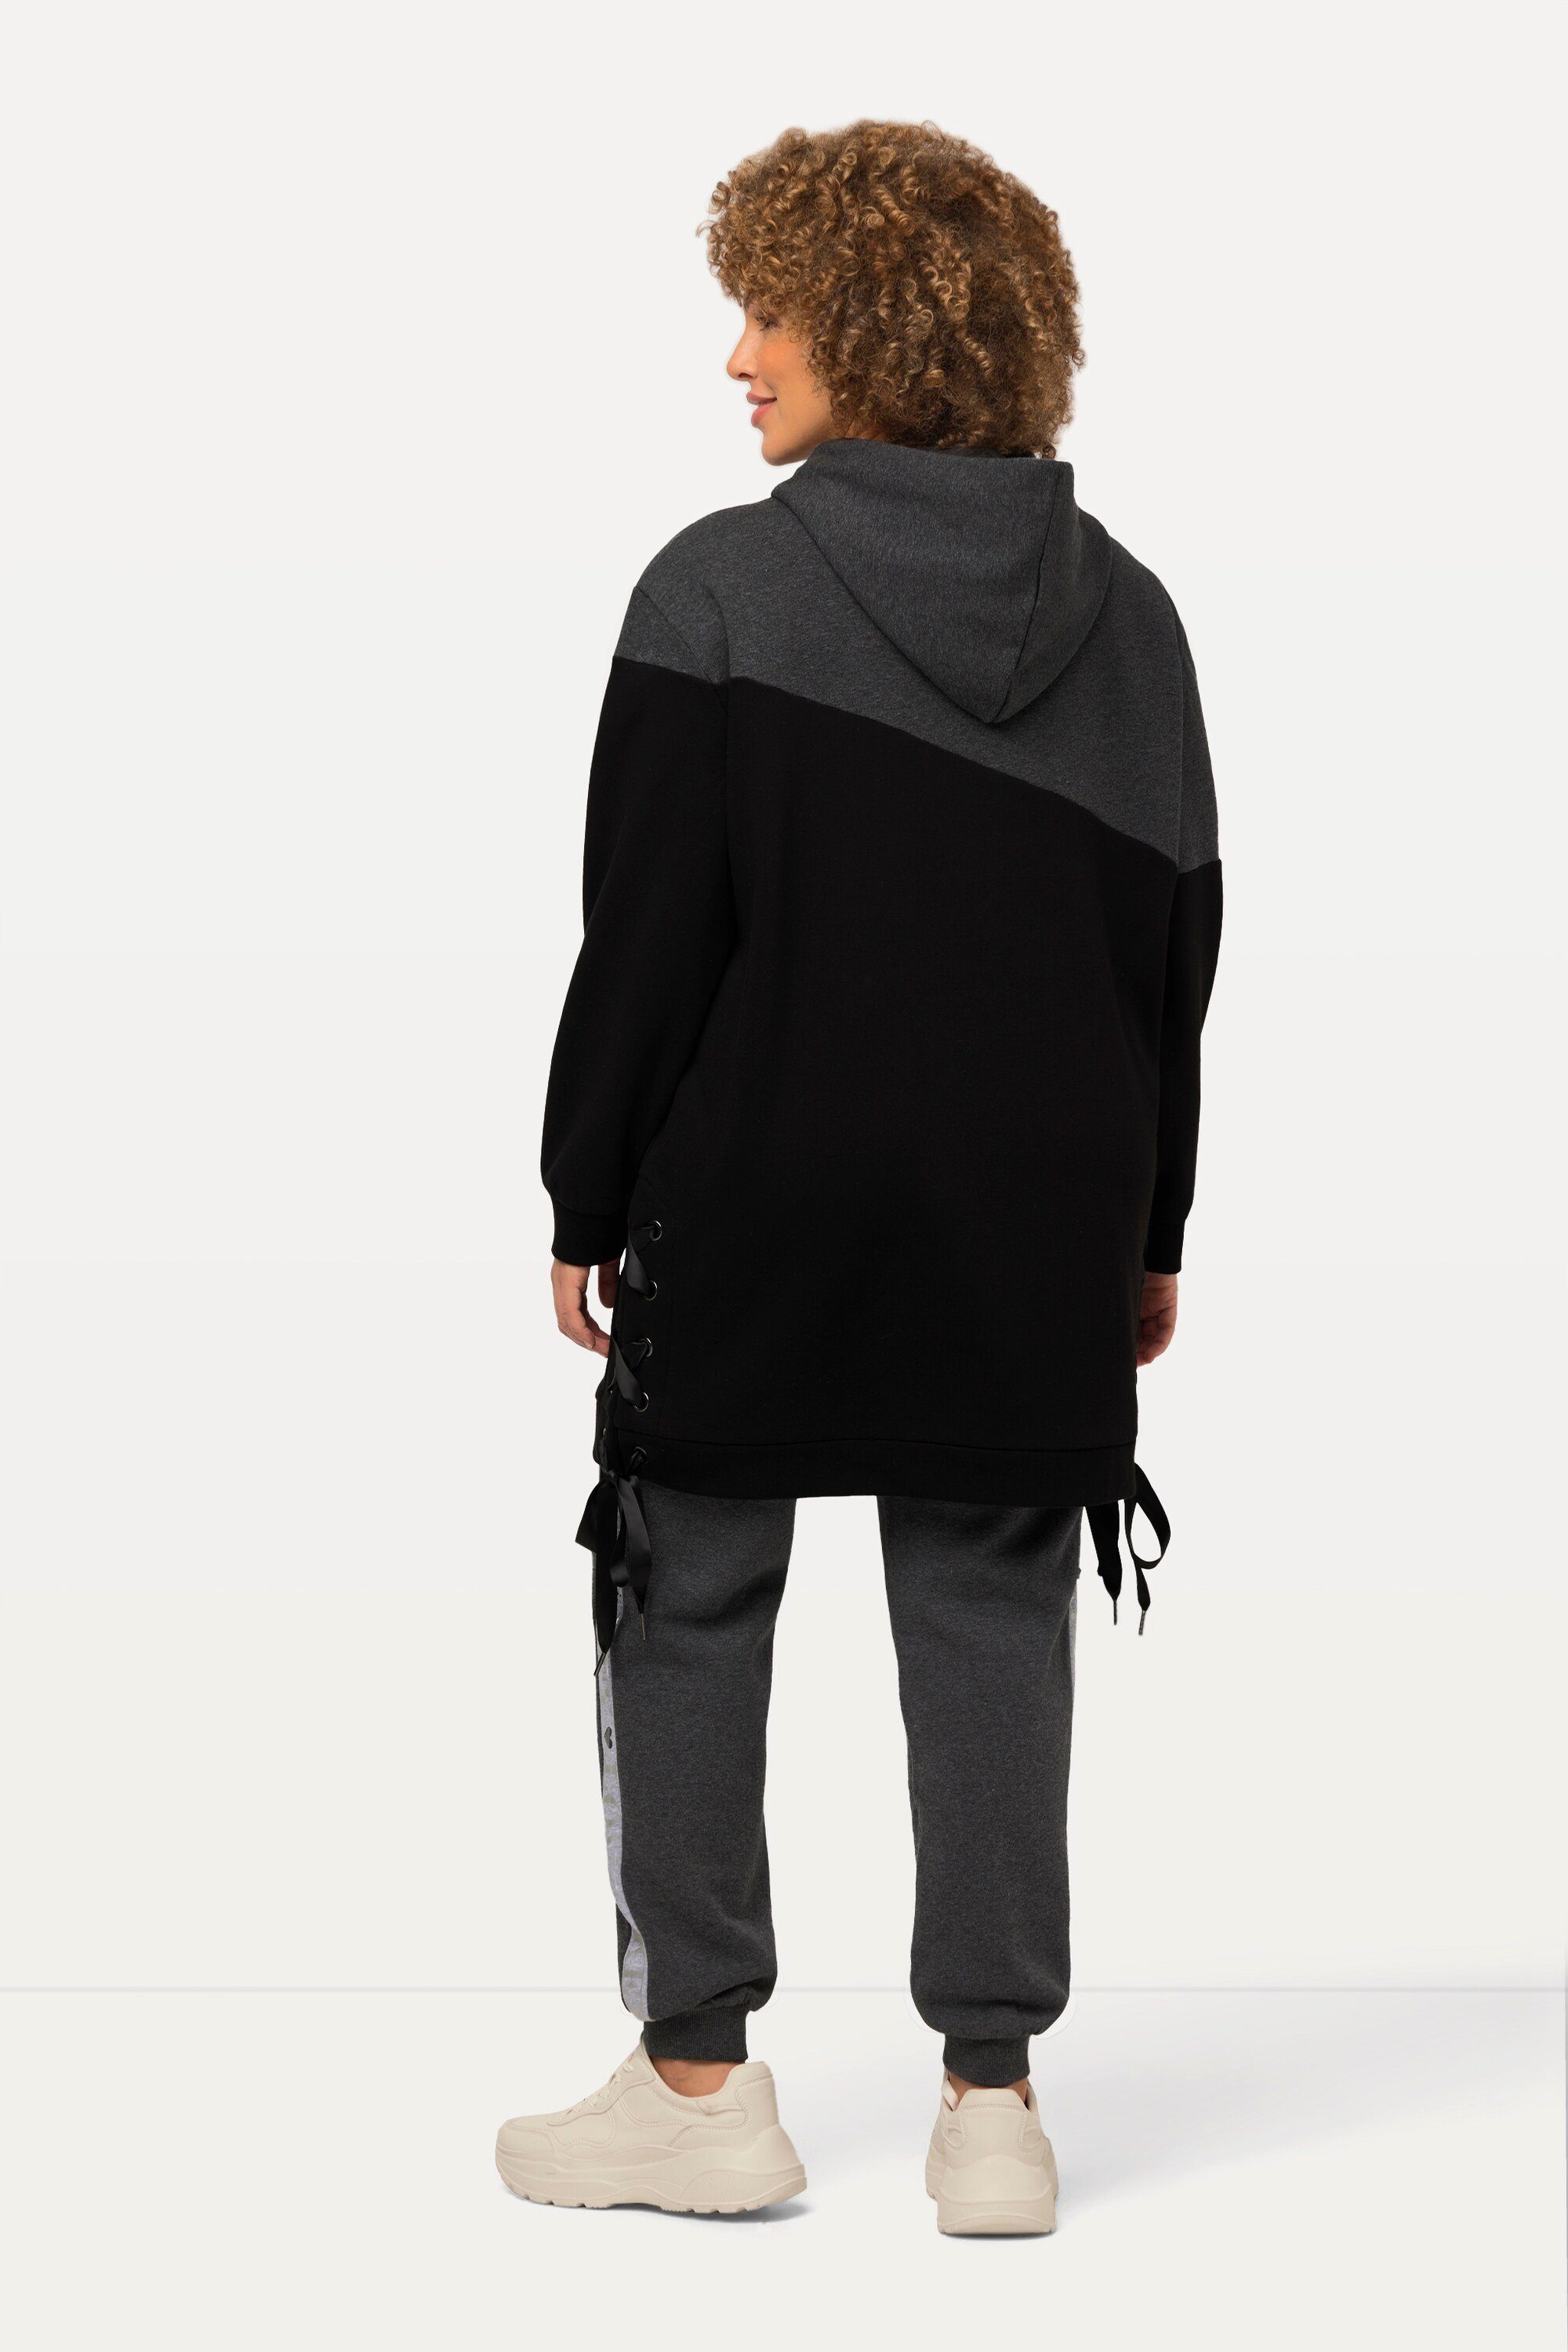 Schnürung Popken Sweatshirt Colorblocking Longsweater Ulla Kapuze Langarm